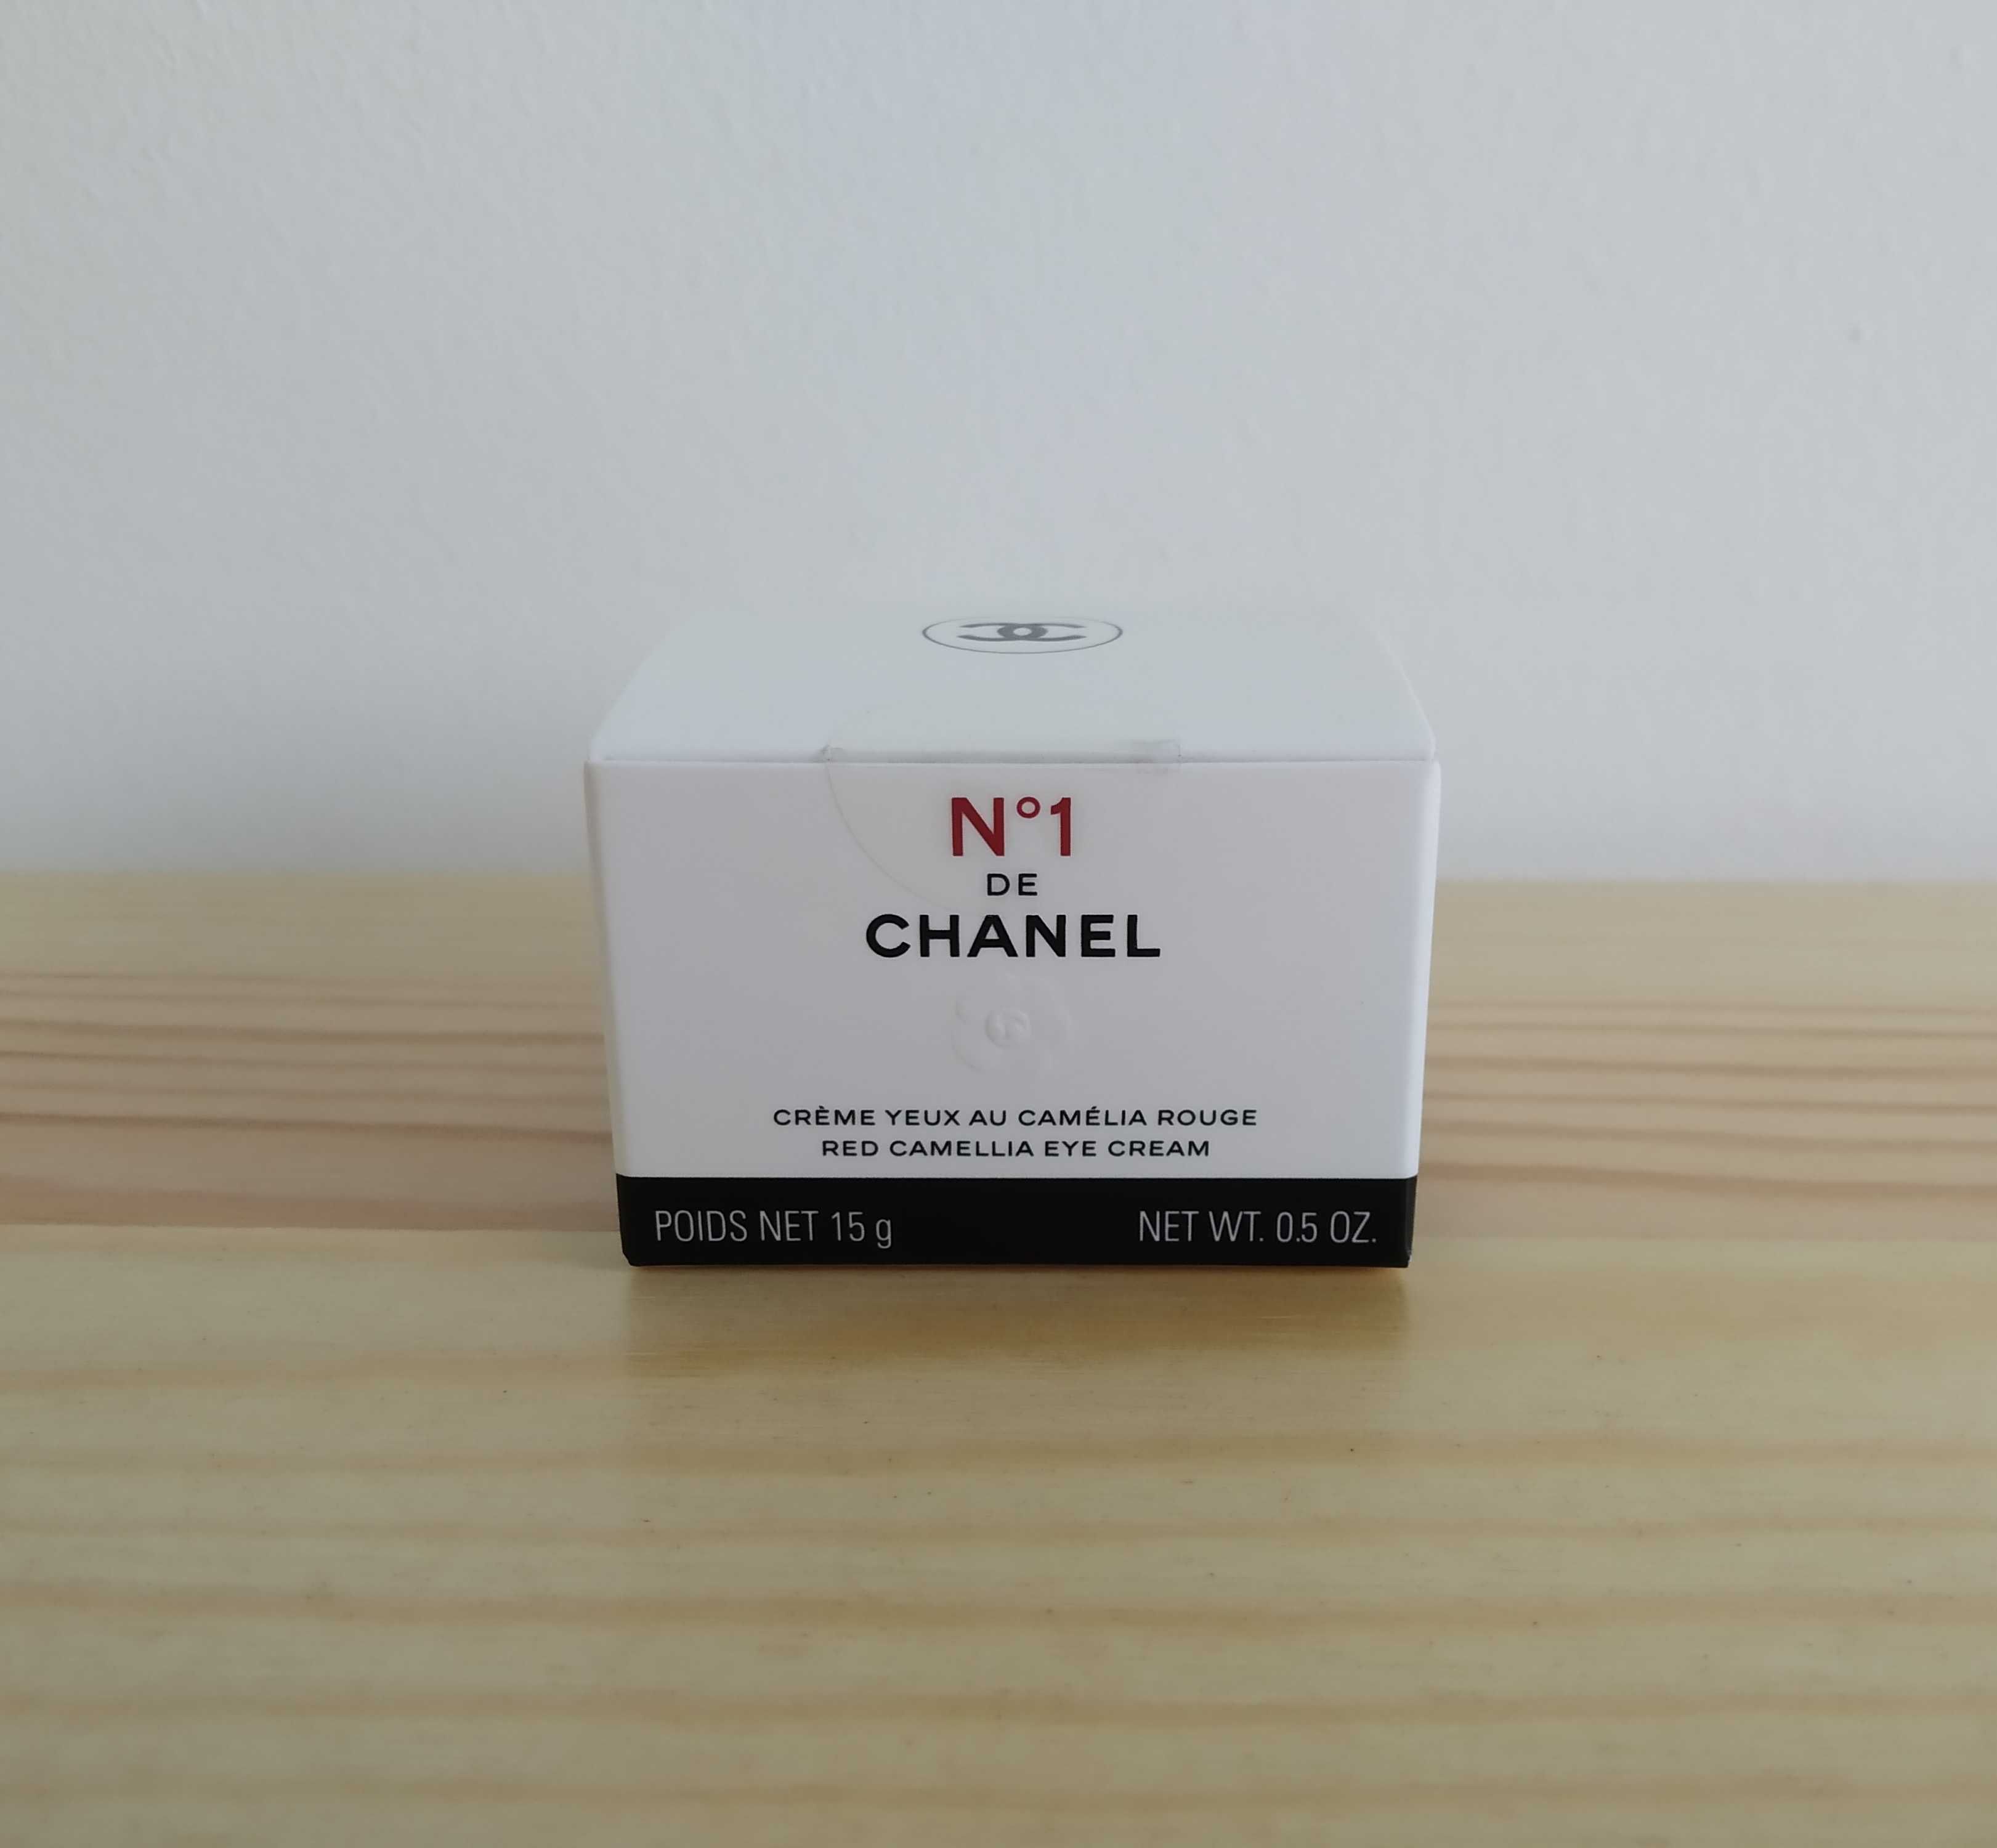 Chanel n°1 Red camellia eye cream